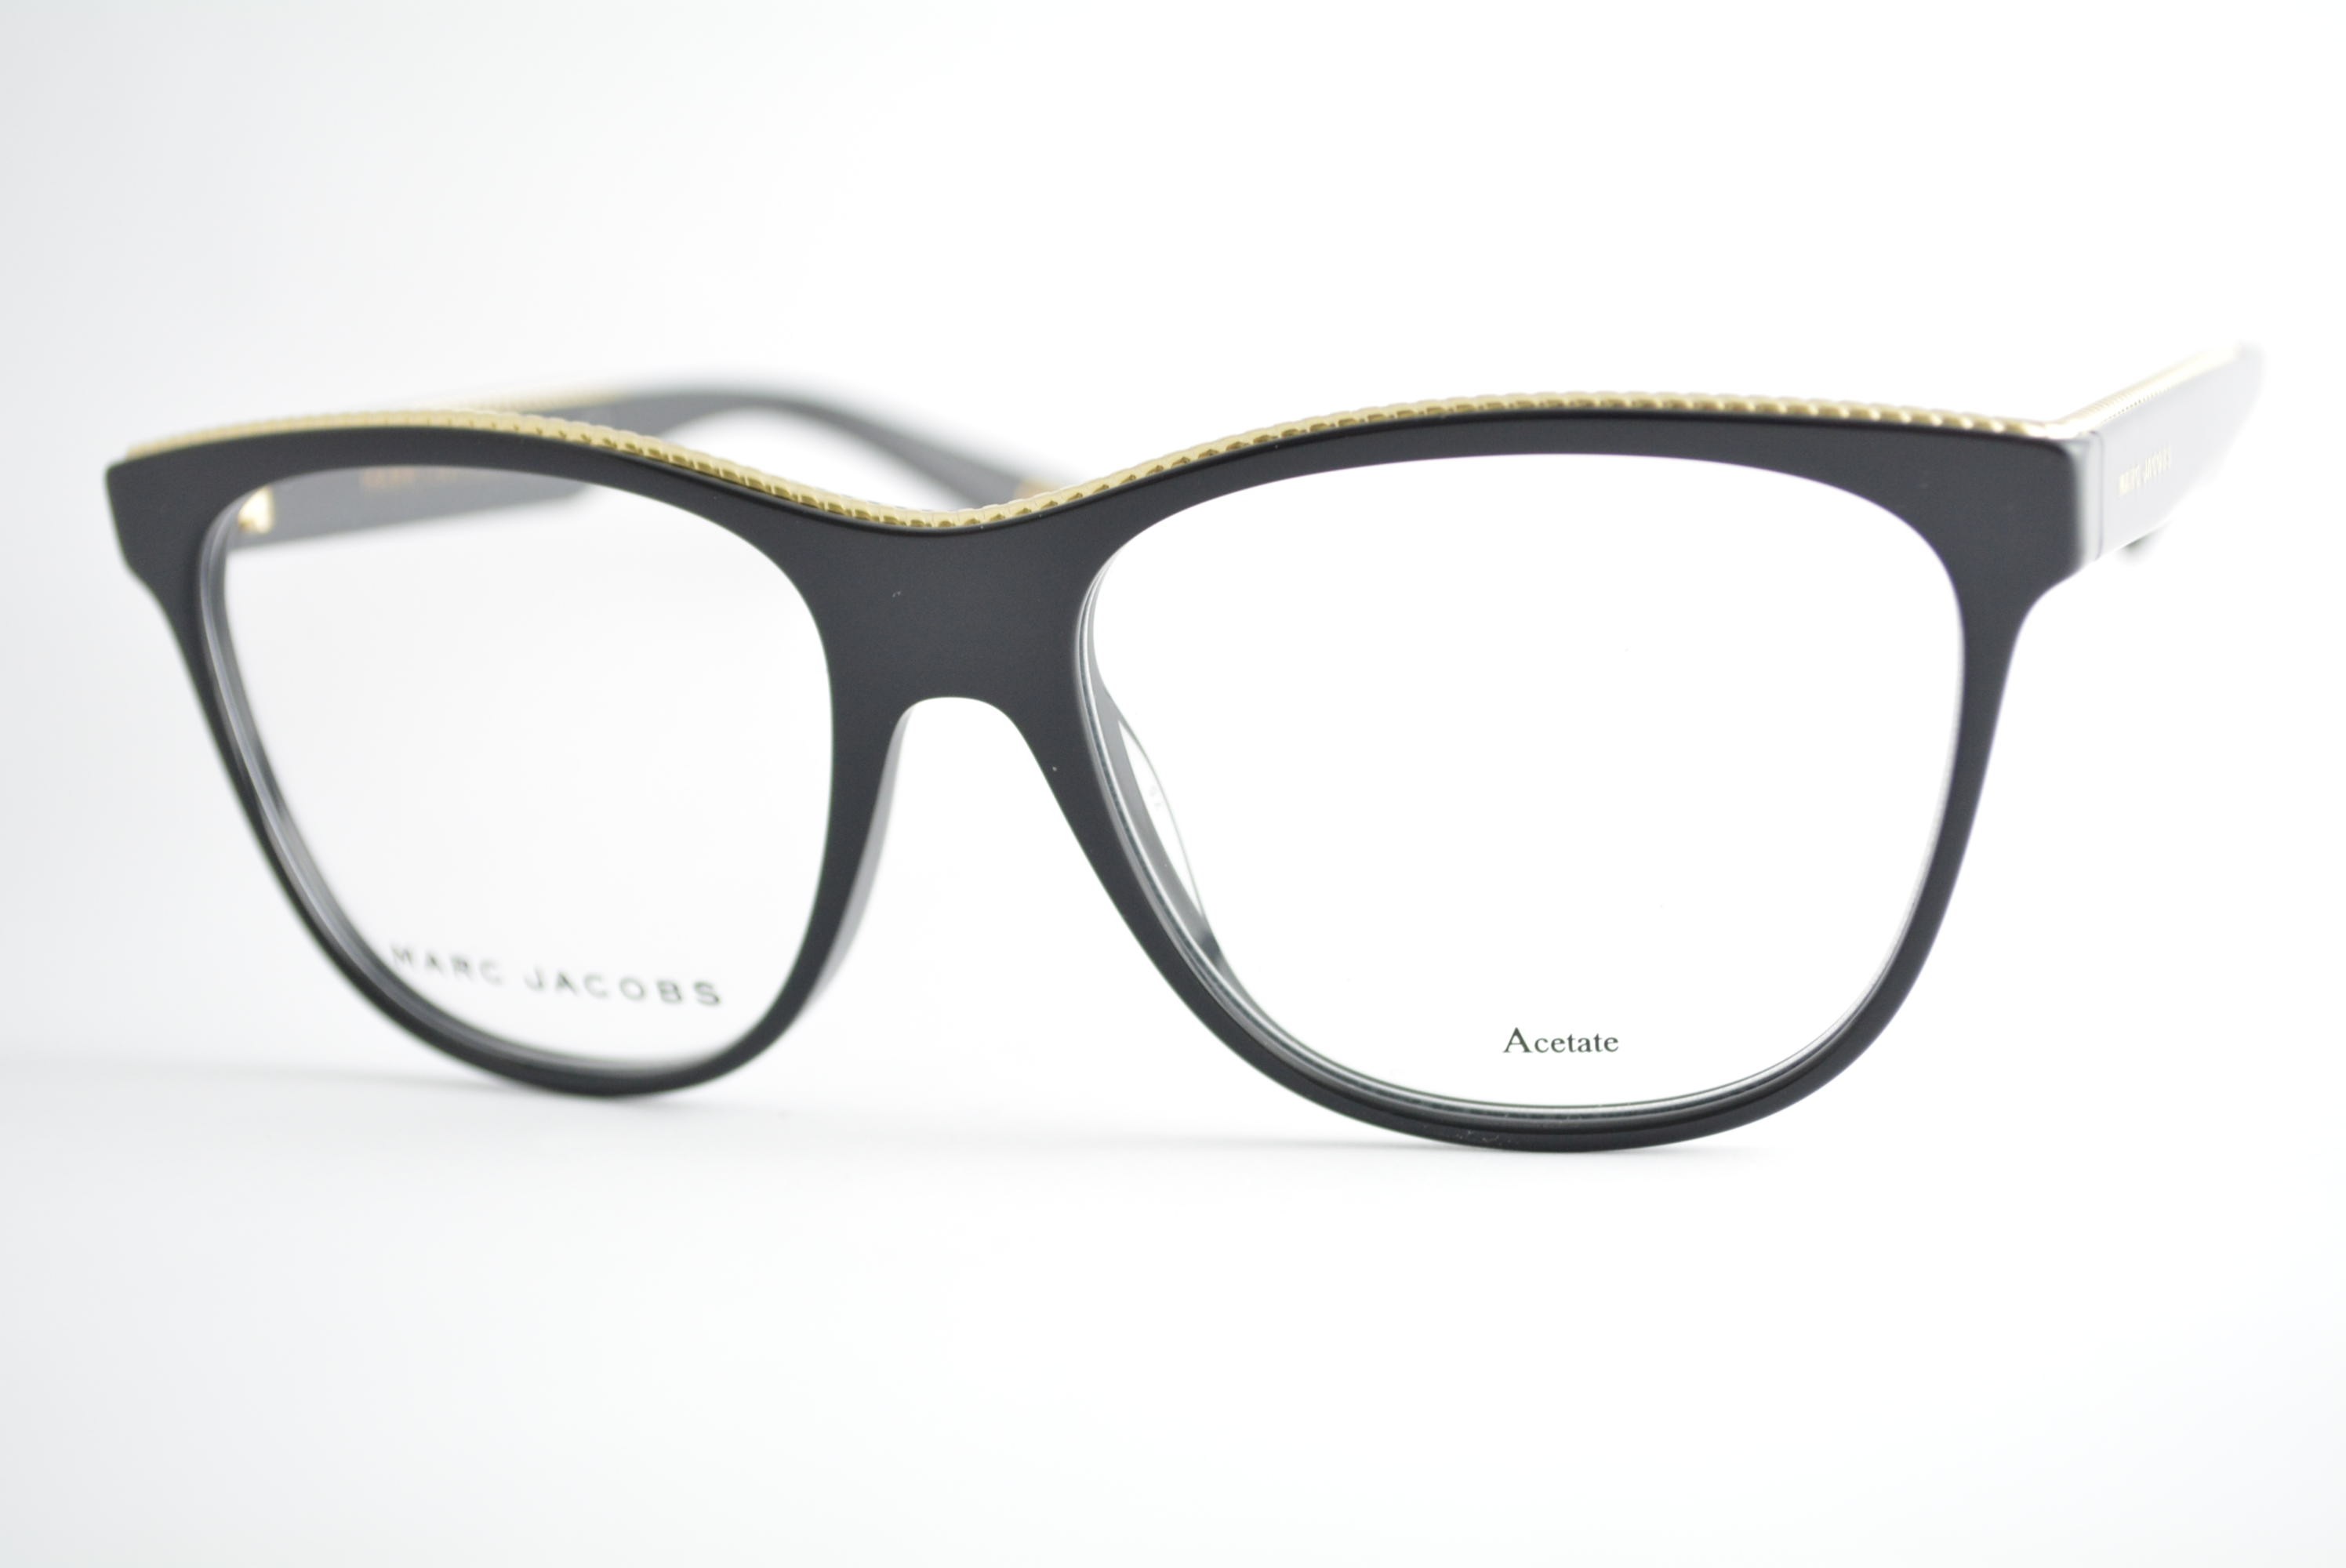 armação de óculos Marc Jacobs mod marc164 807